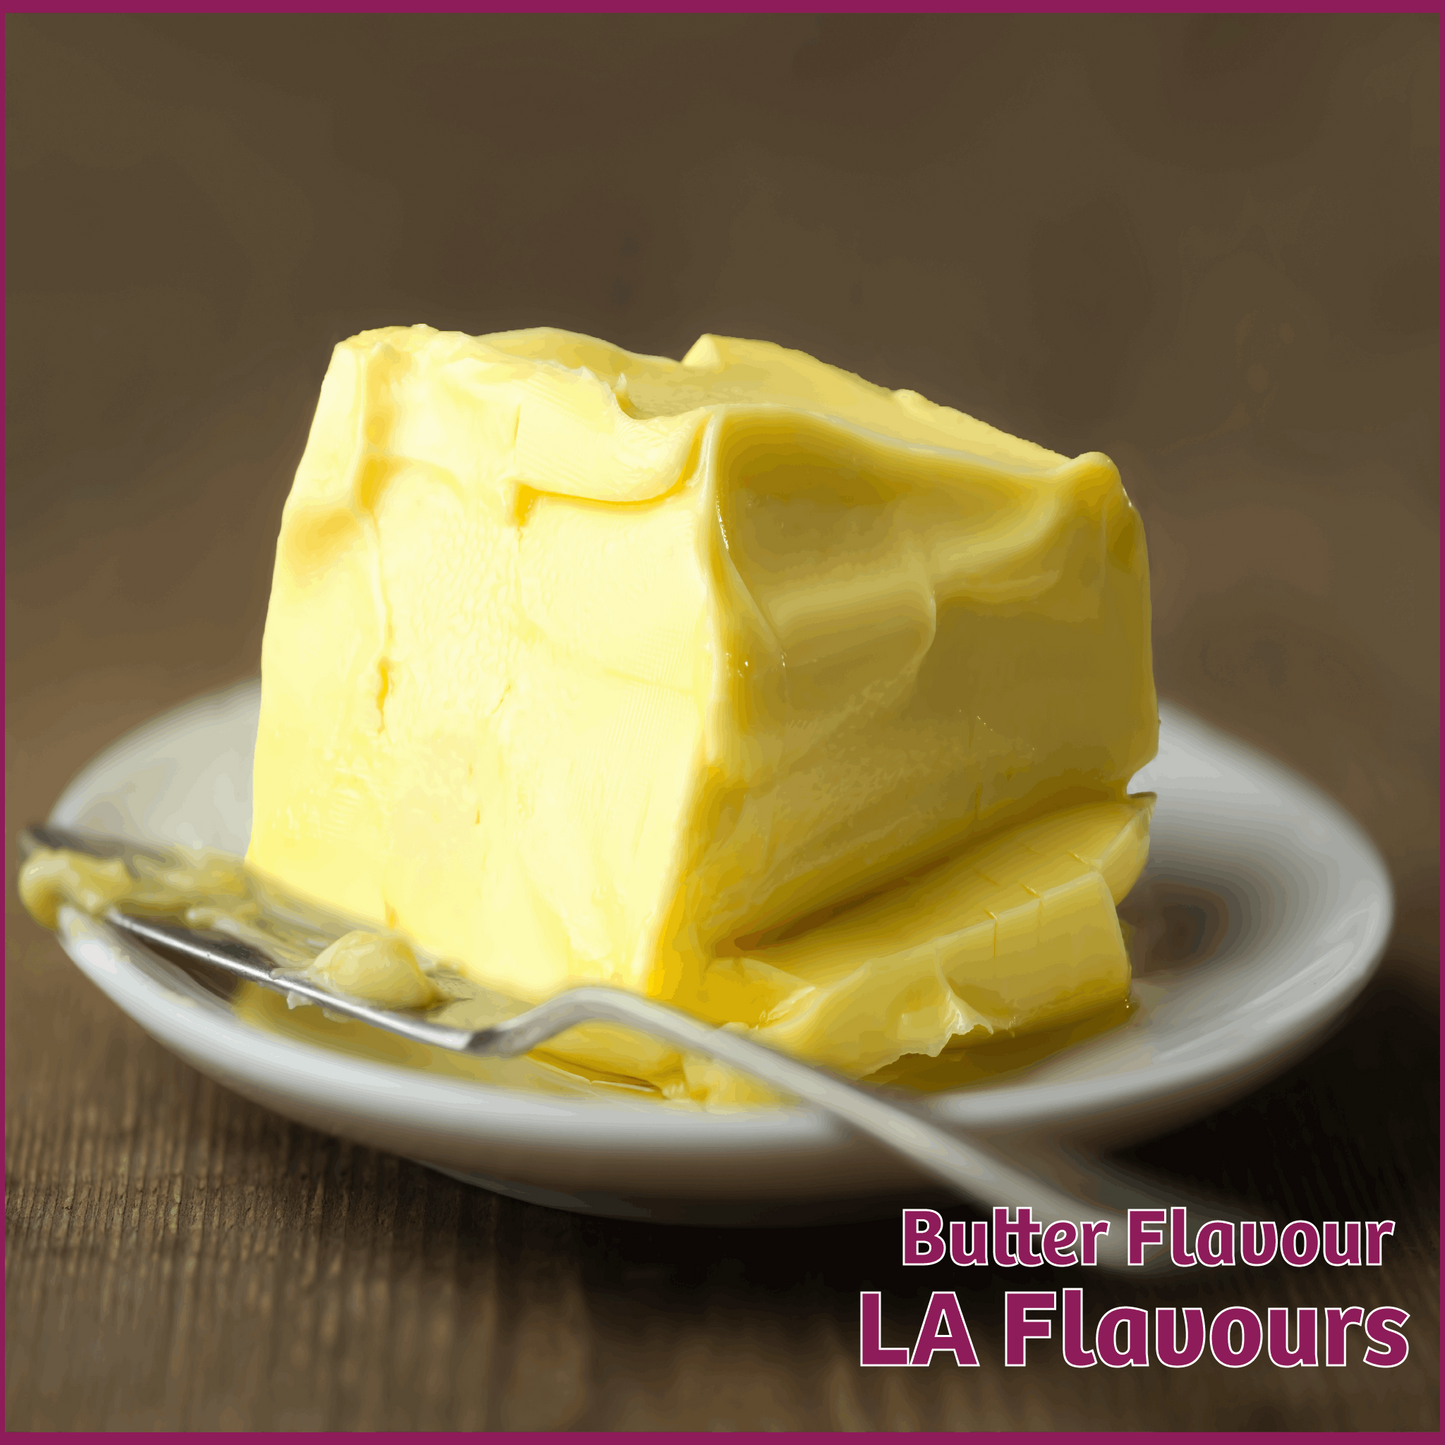 Butter Flavour - LA Flavours - Flavour Fog - Canada's flavour depot.